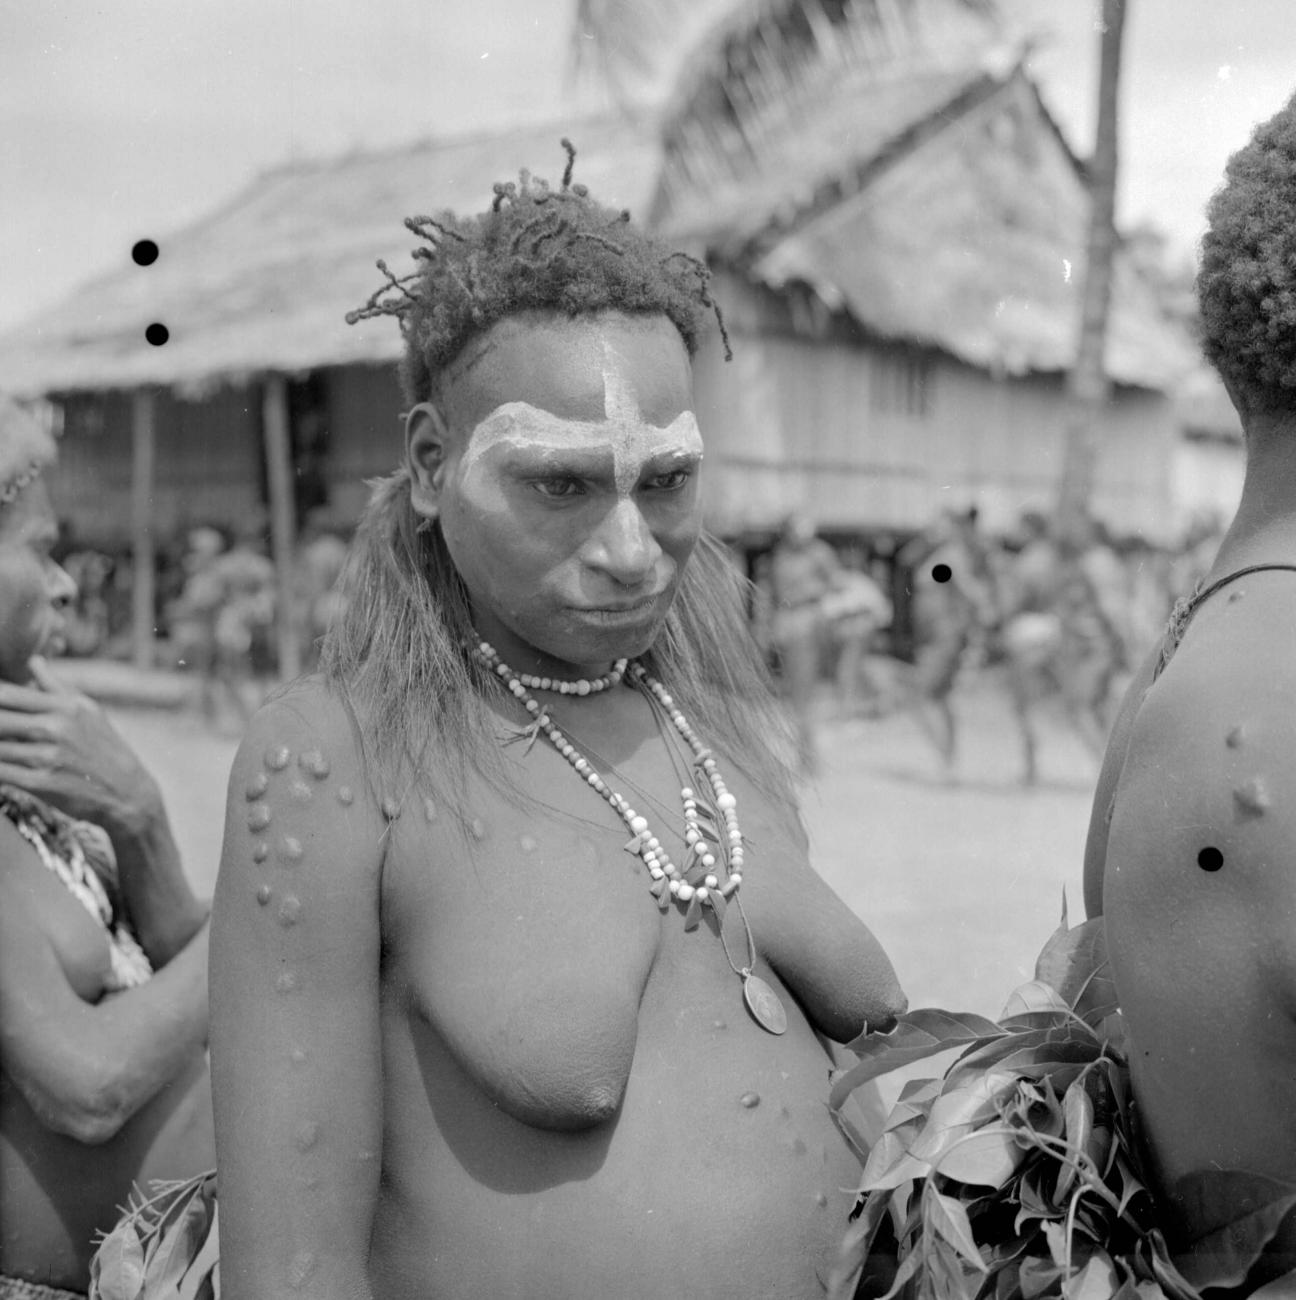 BD/66/381 - 
Vrouw uit zuid Nieuw Guinea
